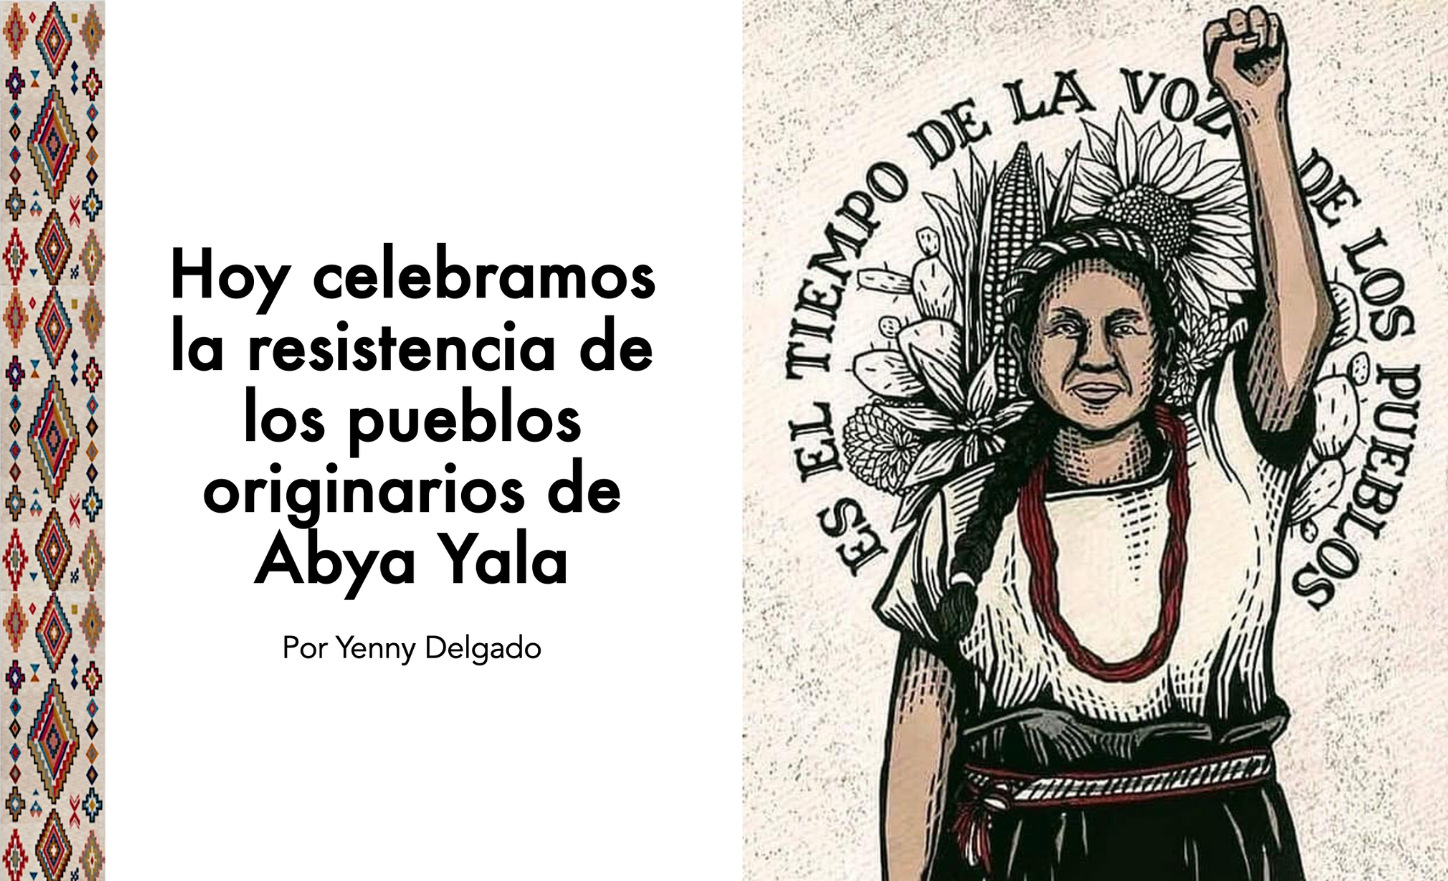 Hoy celebramos la resistencia de los pueblos originarios de Abya Yala